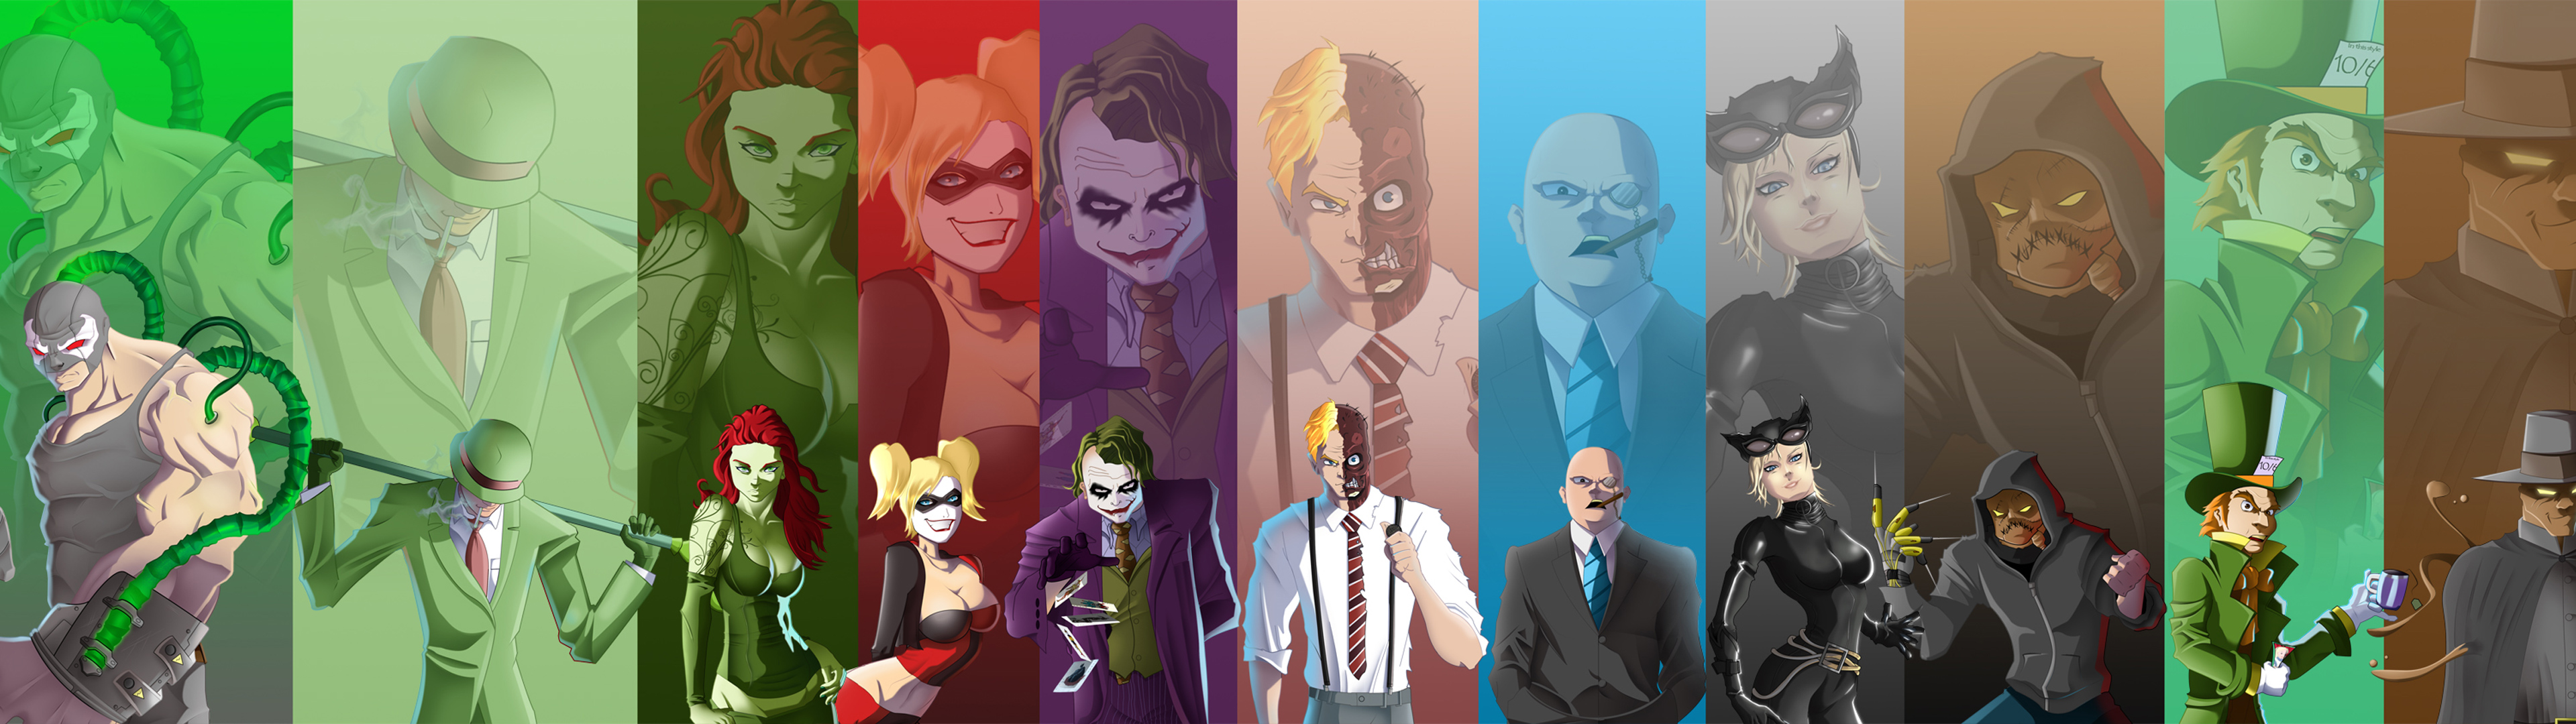 riddler (dc comics), comics, batman, bane (dc comics), catwoman, harley quinn, joker, poison ivy, two face 4K Ultra